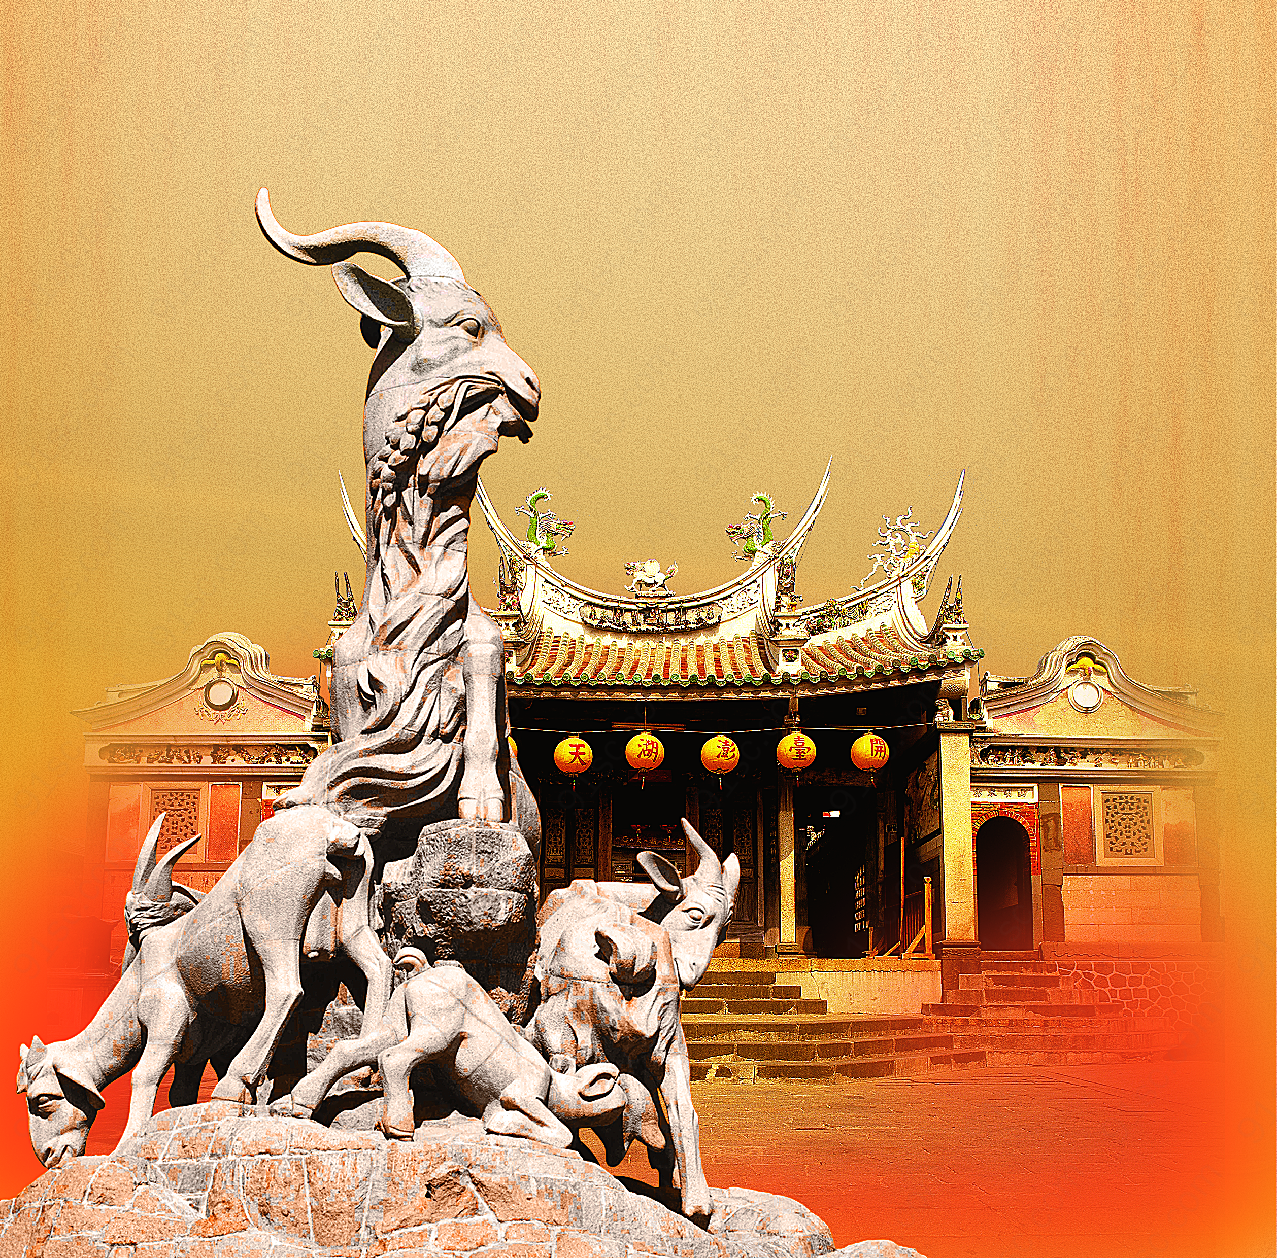 广州五羊雕塑风景